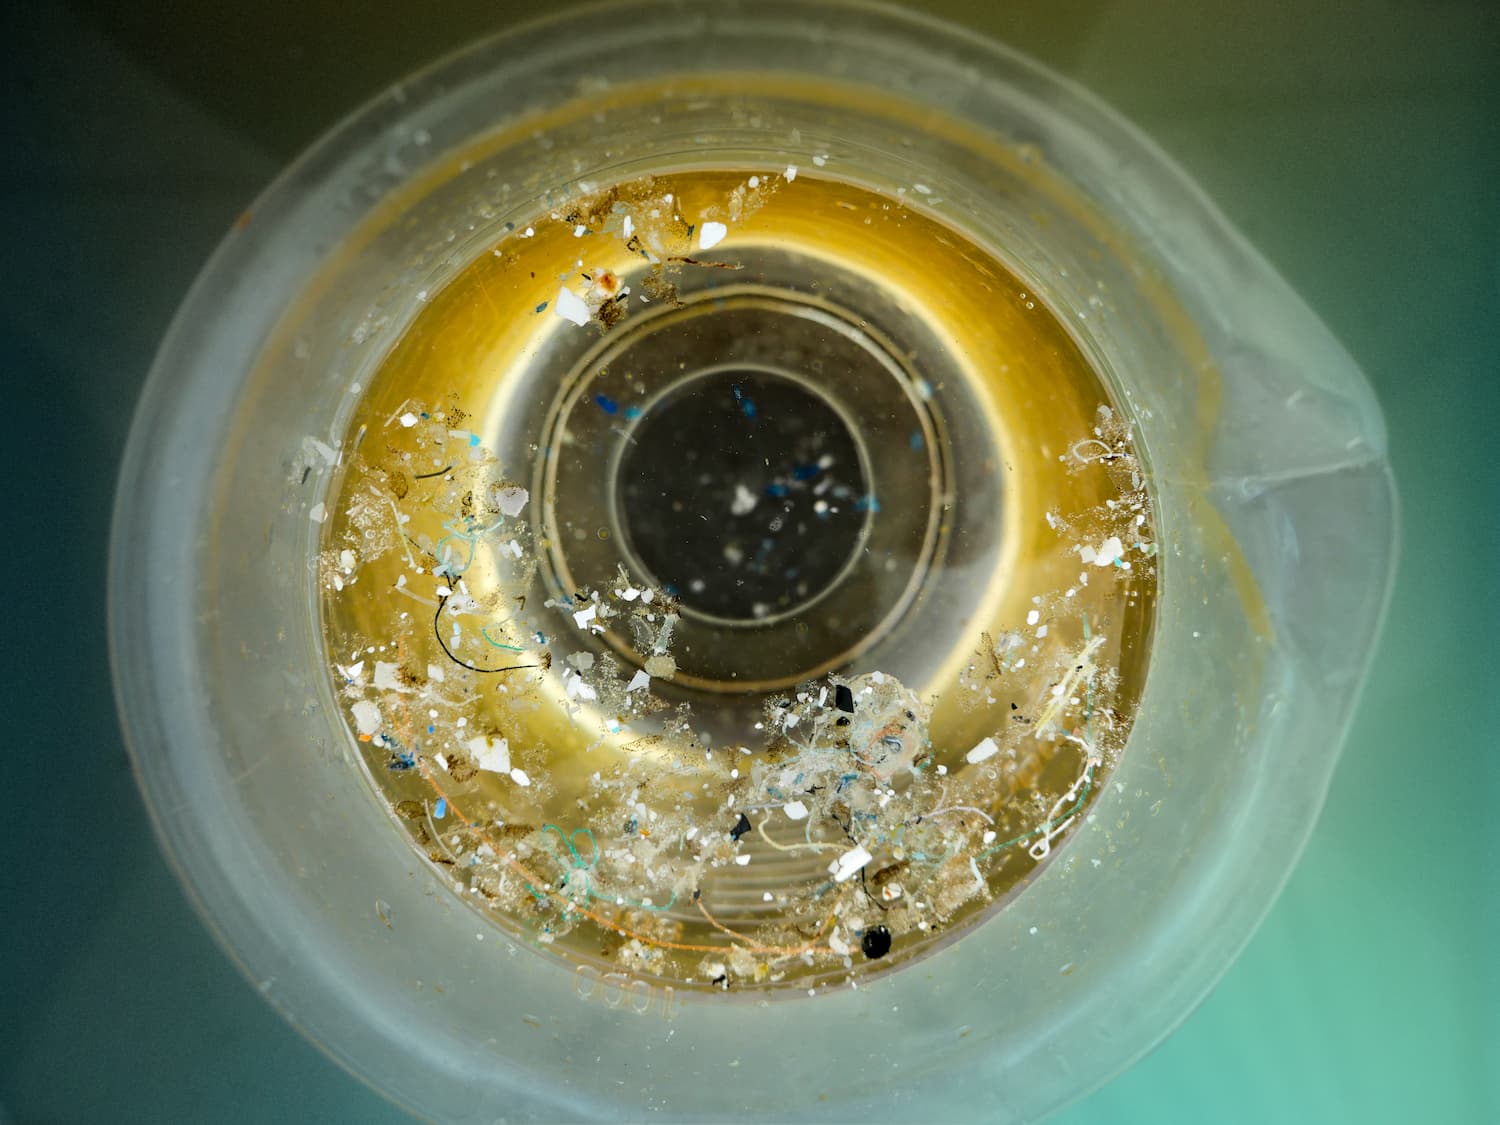 Echantillon au microscope : plancton et microplastiques